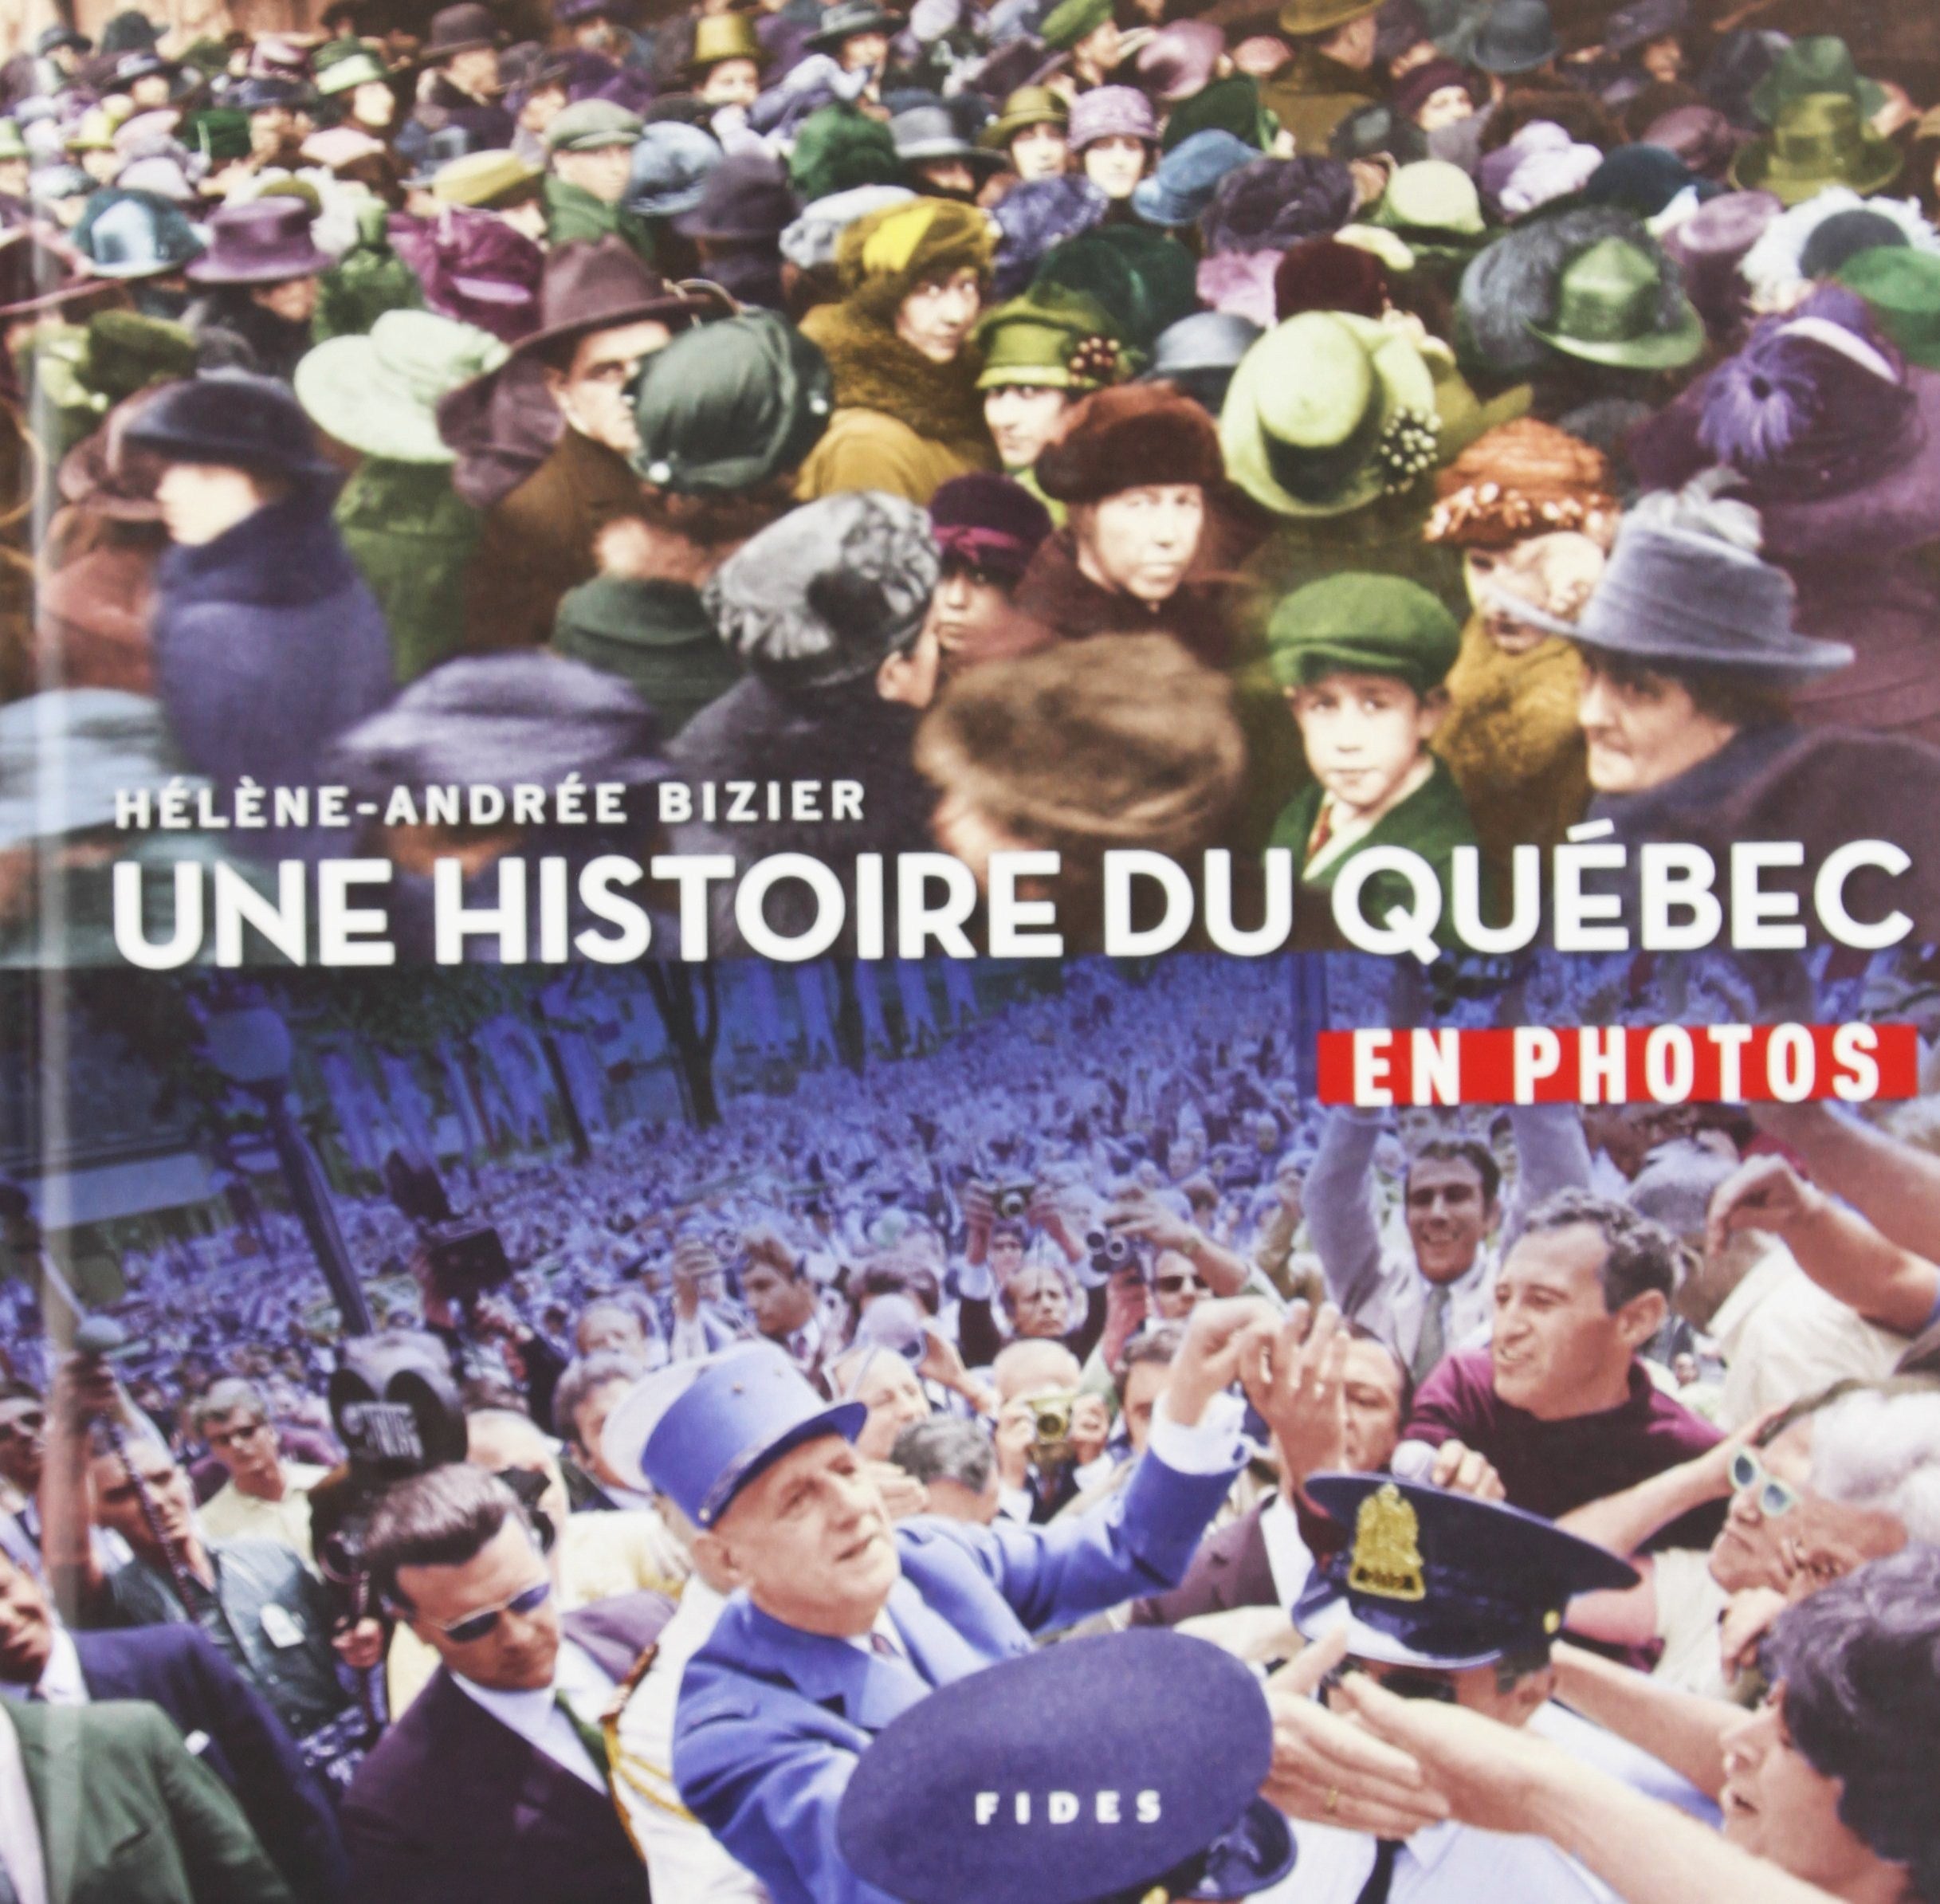 Livre ISBN 2762126789 Une histoire du québec en photos (Hélène-Andrée Bizier)